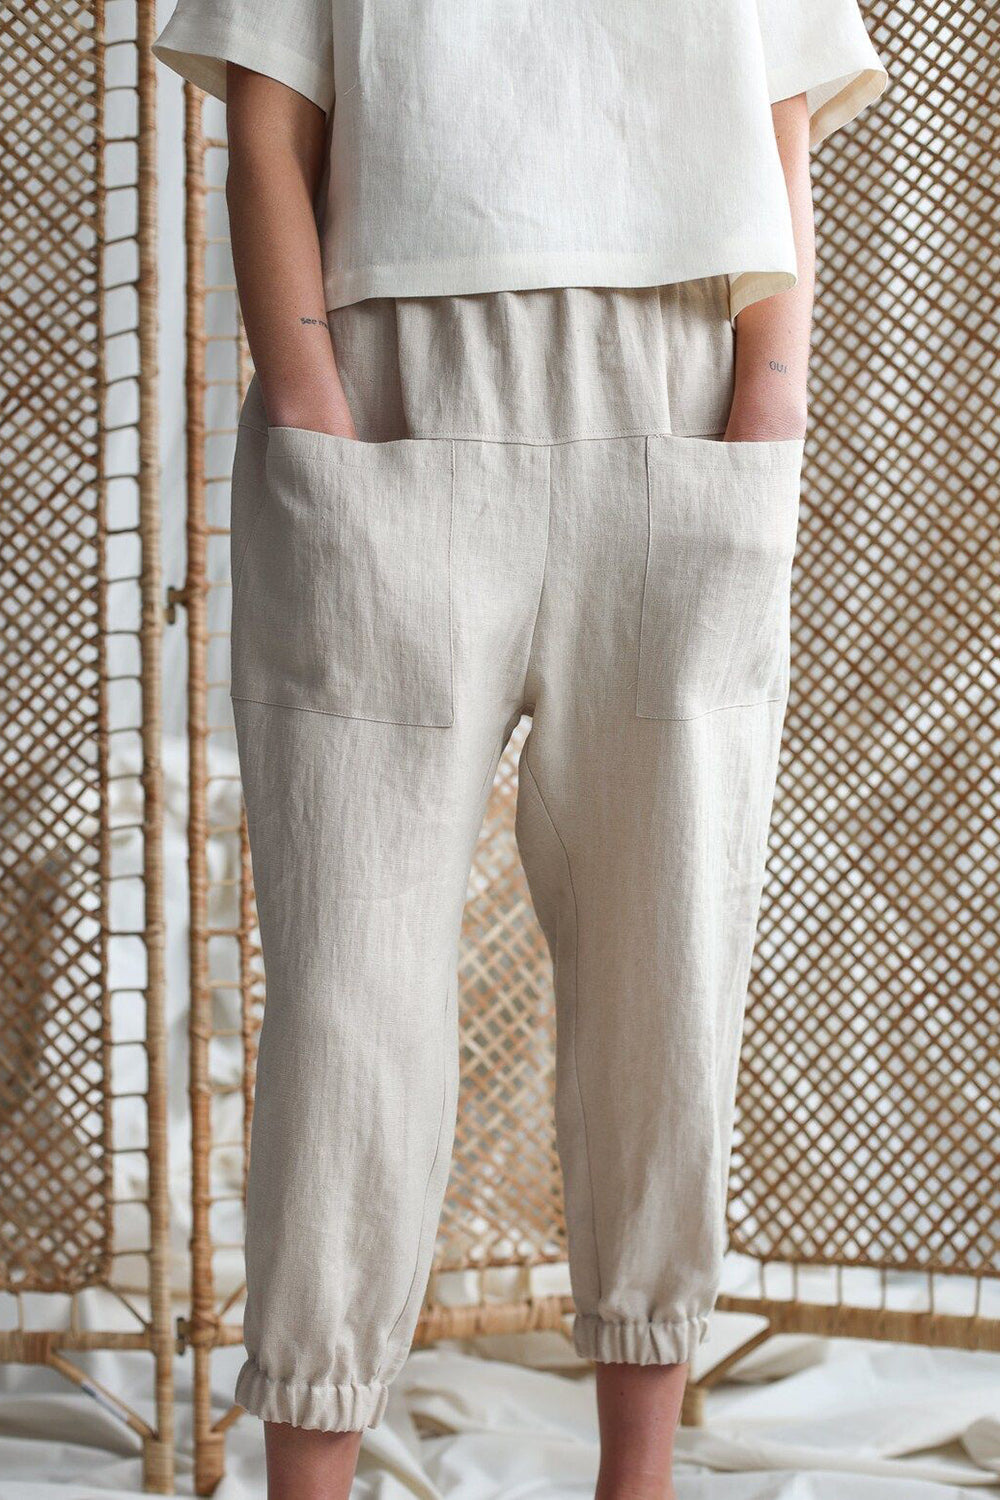 Mid-Rise Waist Pants with Pockets Casual Boho Fashion